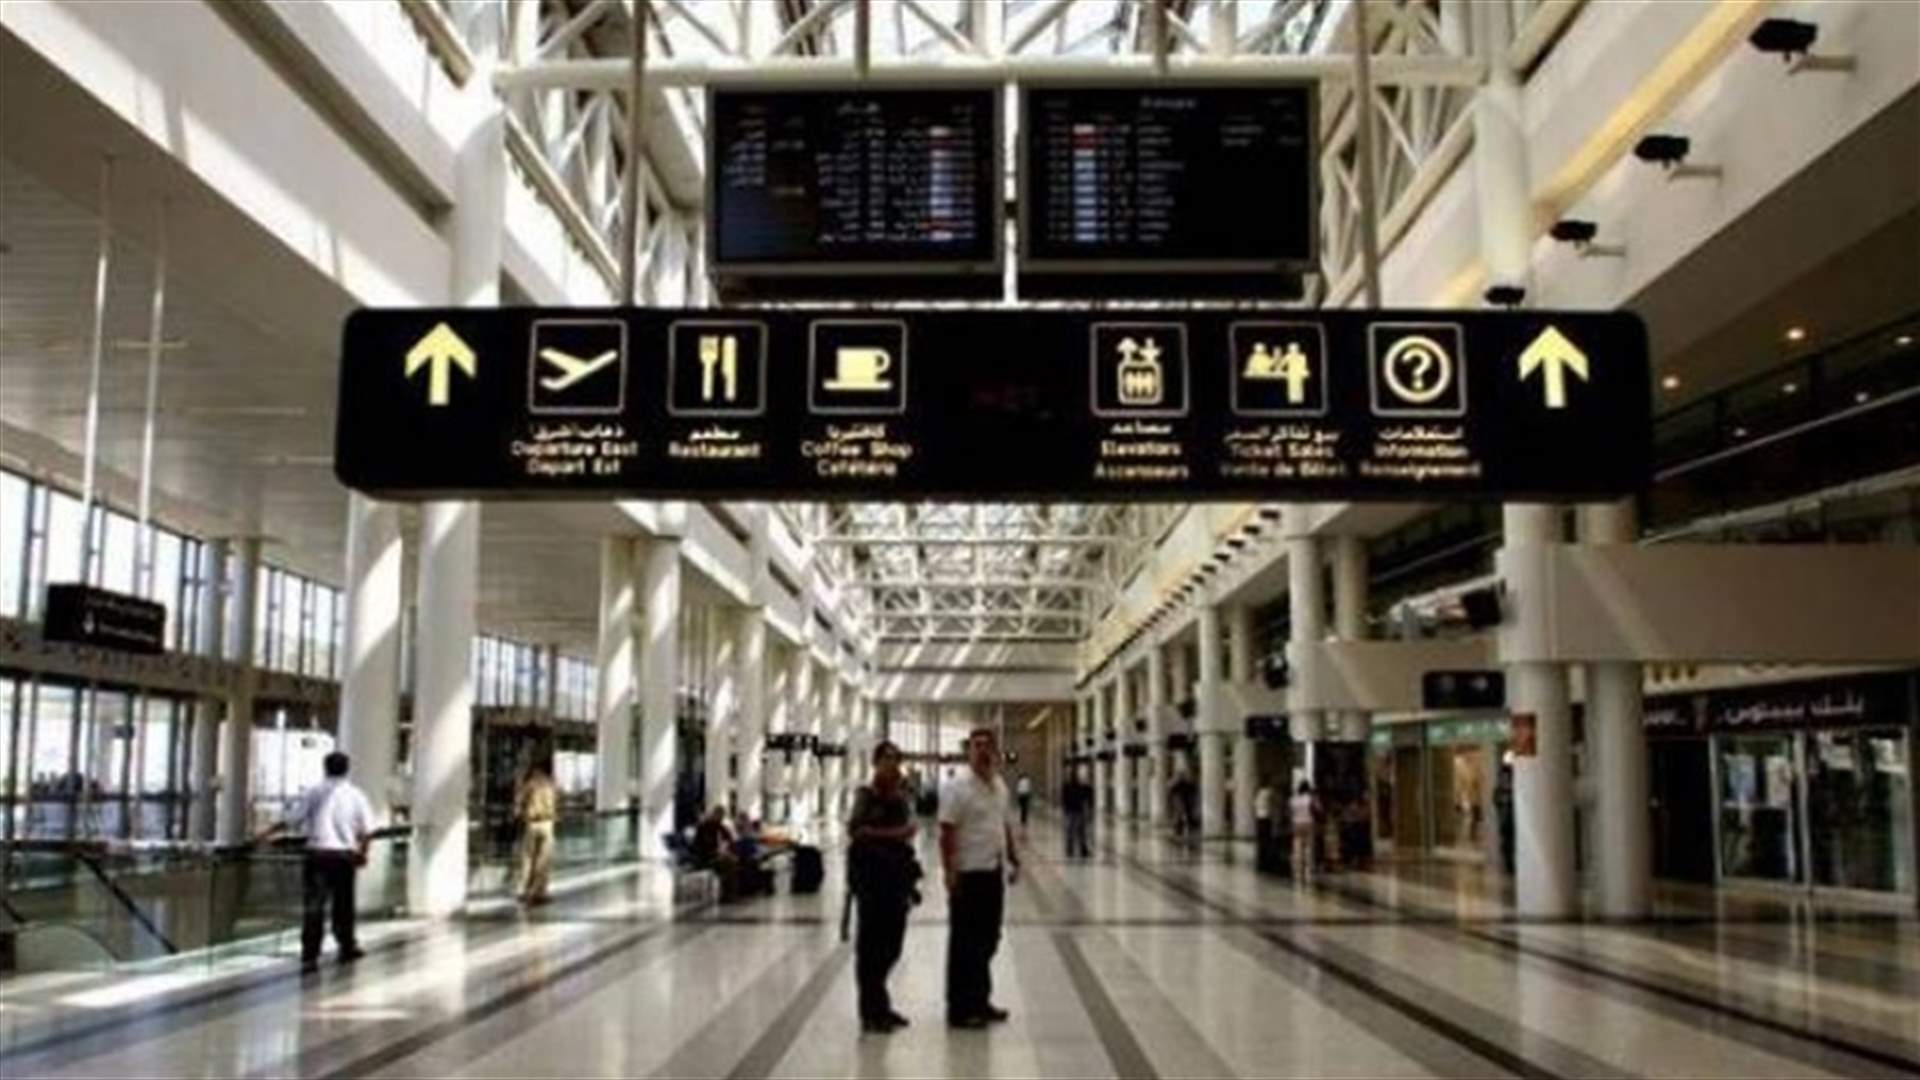 كثافة في اعداد المسافرين... وصور تظهر الزحمة في مطار بيروت